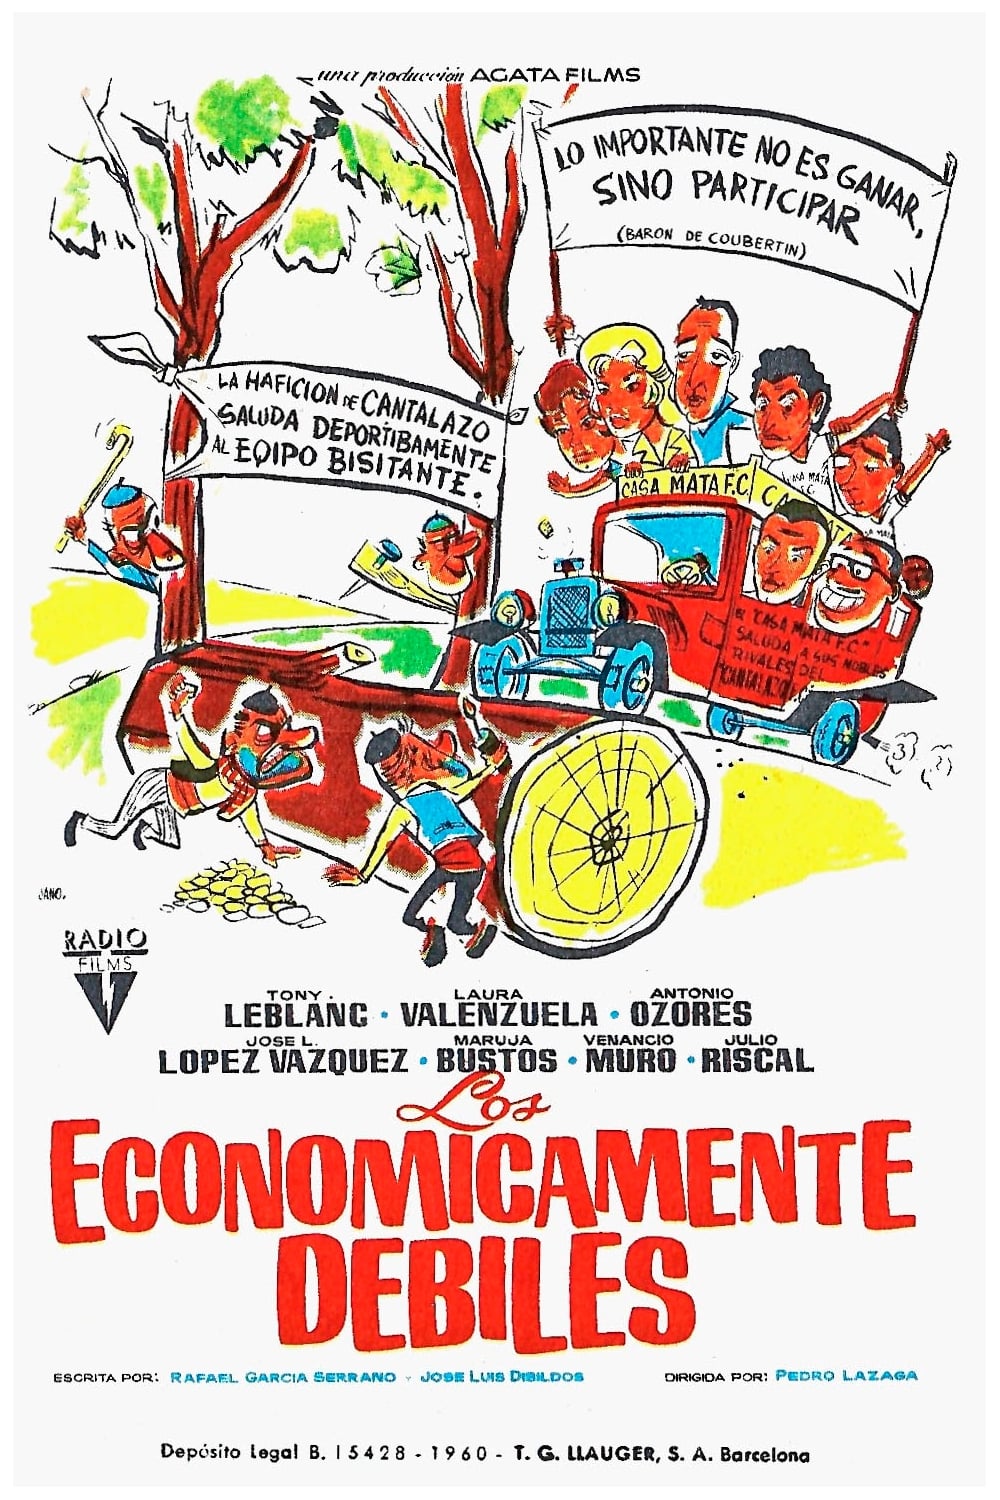 Los económicamente débiles (1960)